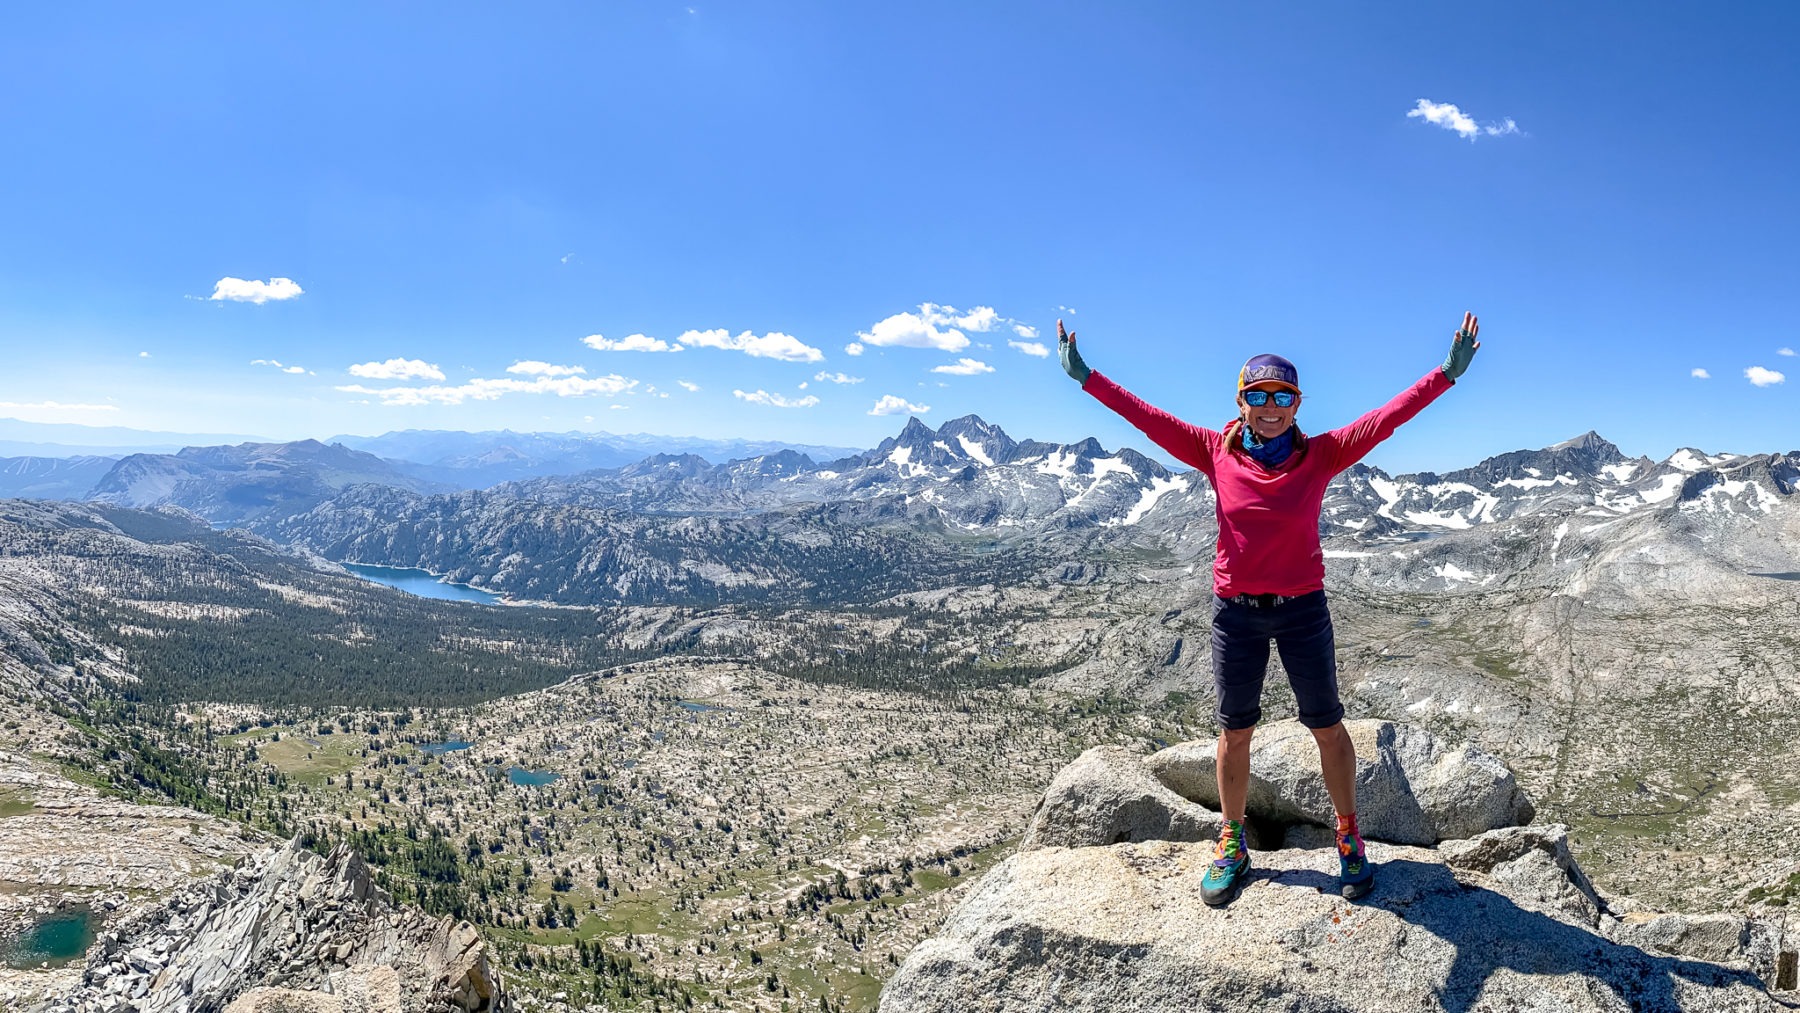 Lady on a Rock là một blog du lịch và leo núi rất thú vị và bổ ích. Xem ảnh và khám phá những câu chuyện và hình ảnh đẹp cùng các lời khuyên hữu ích để trang bị kiến thức cho chuyến đi tiếp theo của bạn.